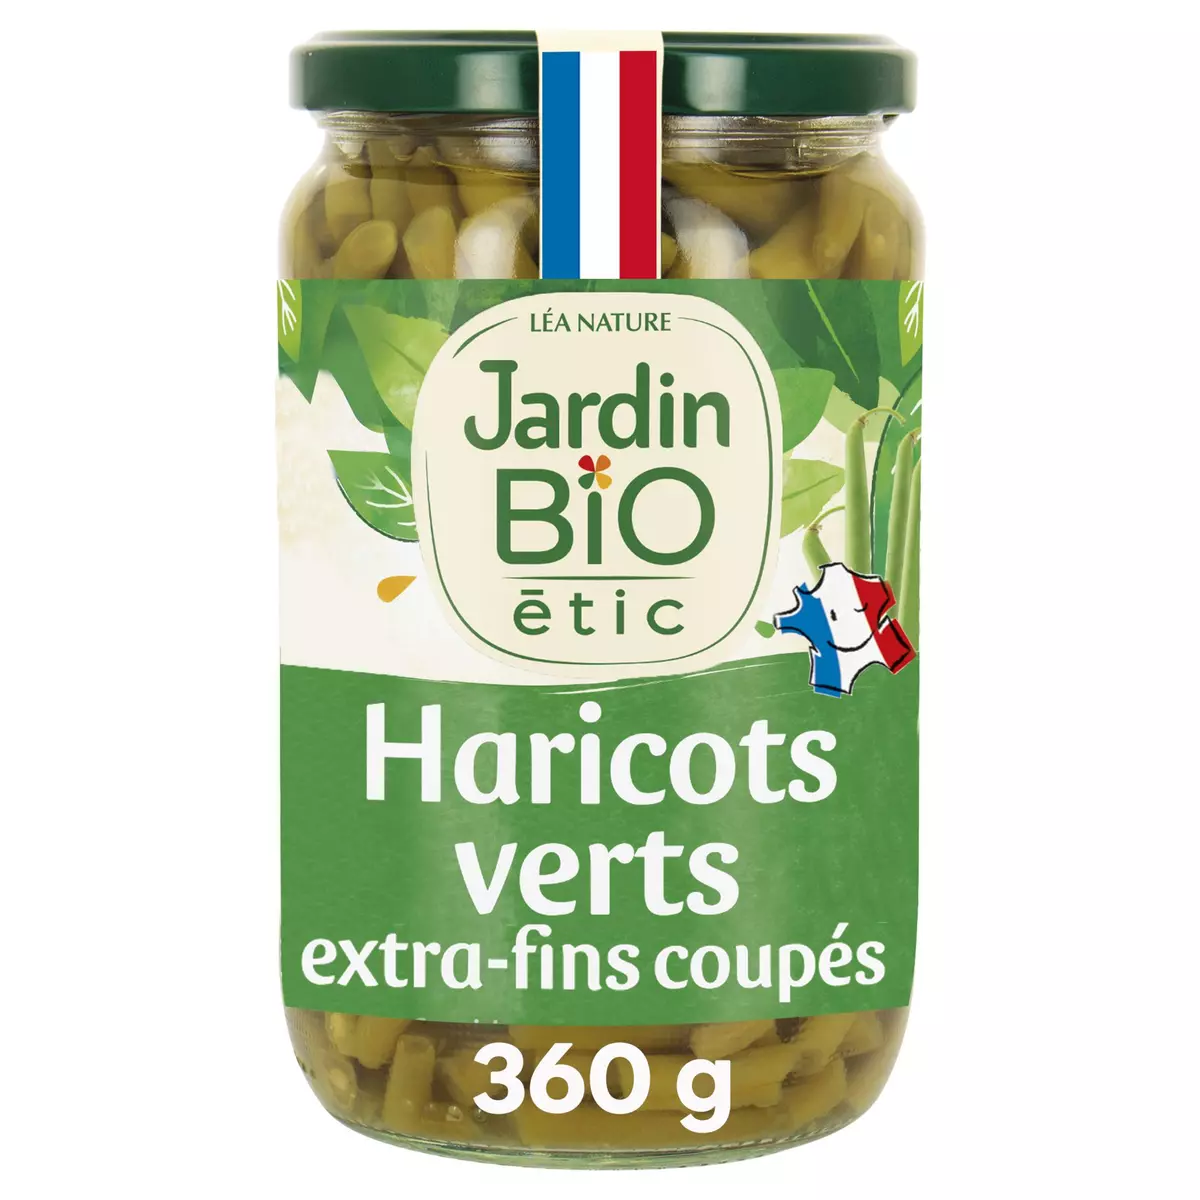 JARDIN BIO ETIC Haricots verts extra-fins coupés en bocal 360g